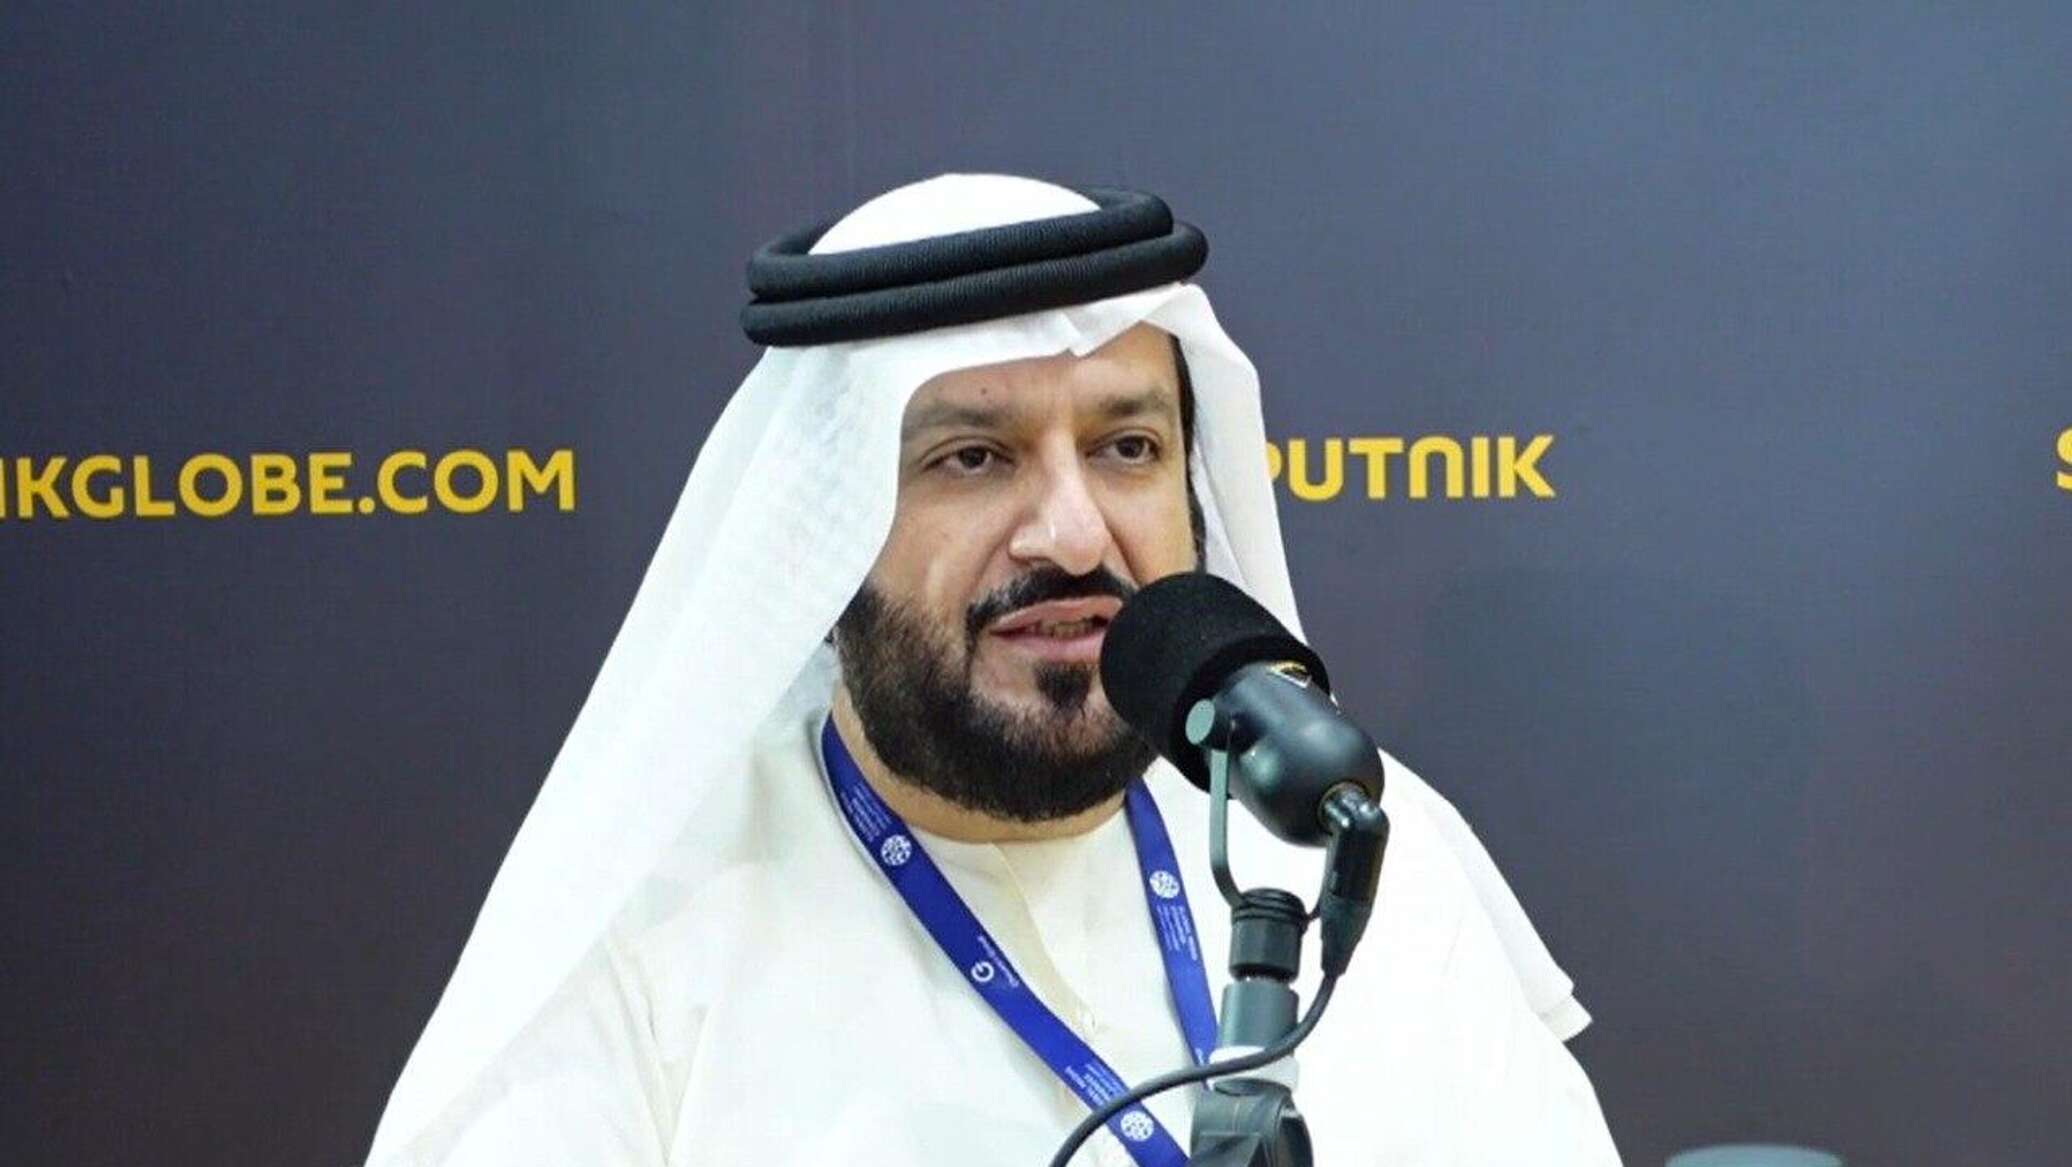 المدير العام لوكالة أنباء الإمارات "وام" يتحدث عن أهمية أعمال كونغرس الإعلام العالمي